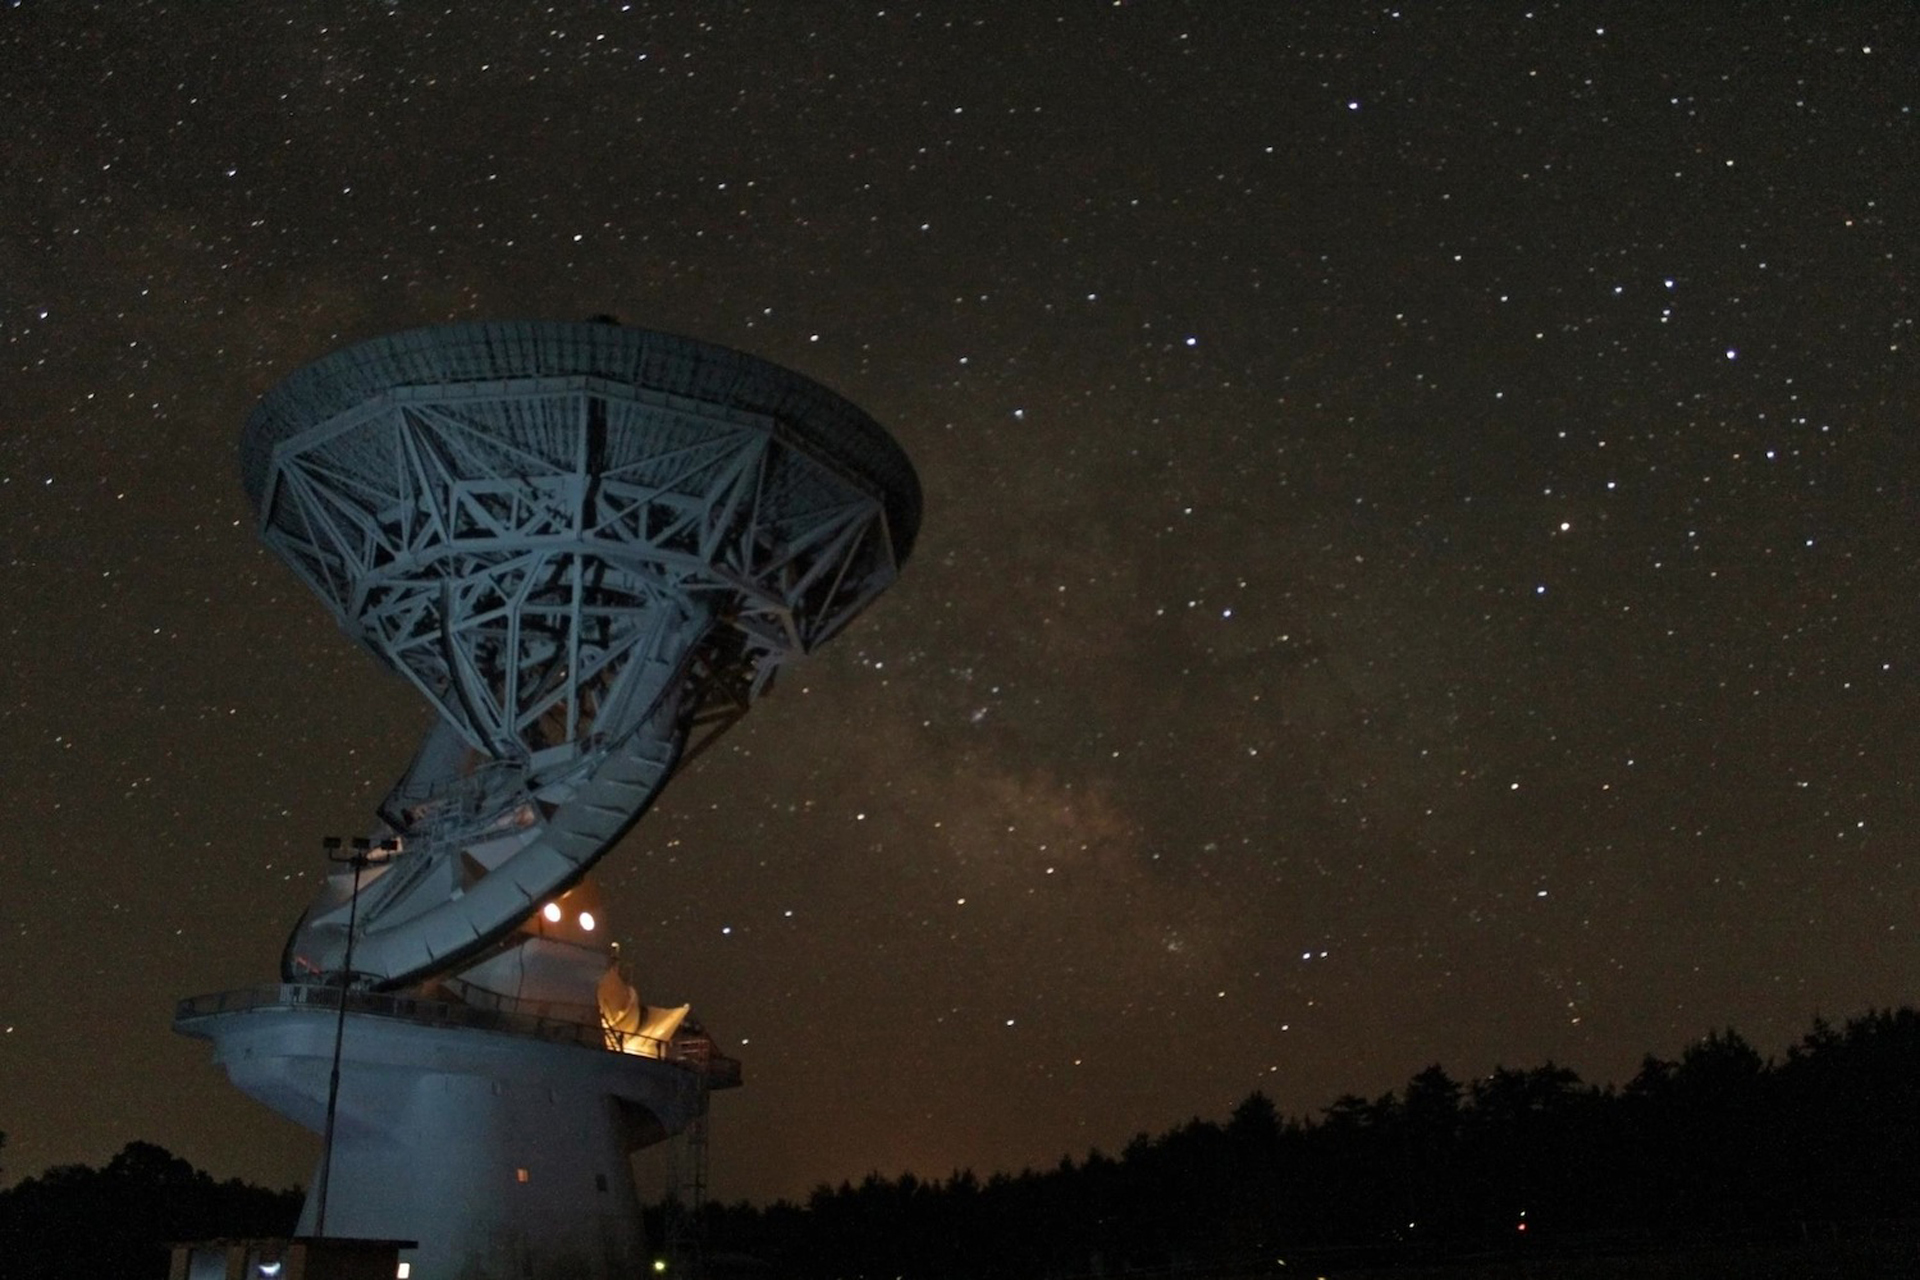 140-foot Telescope at night